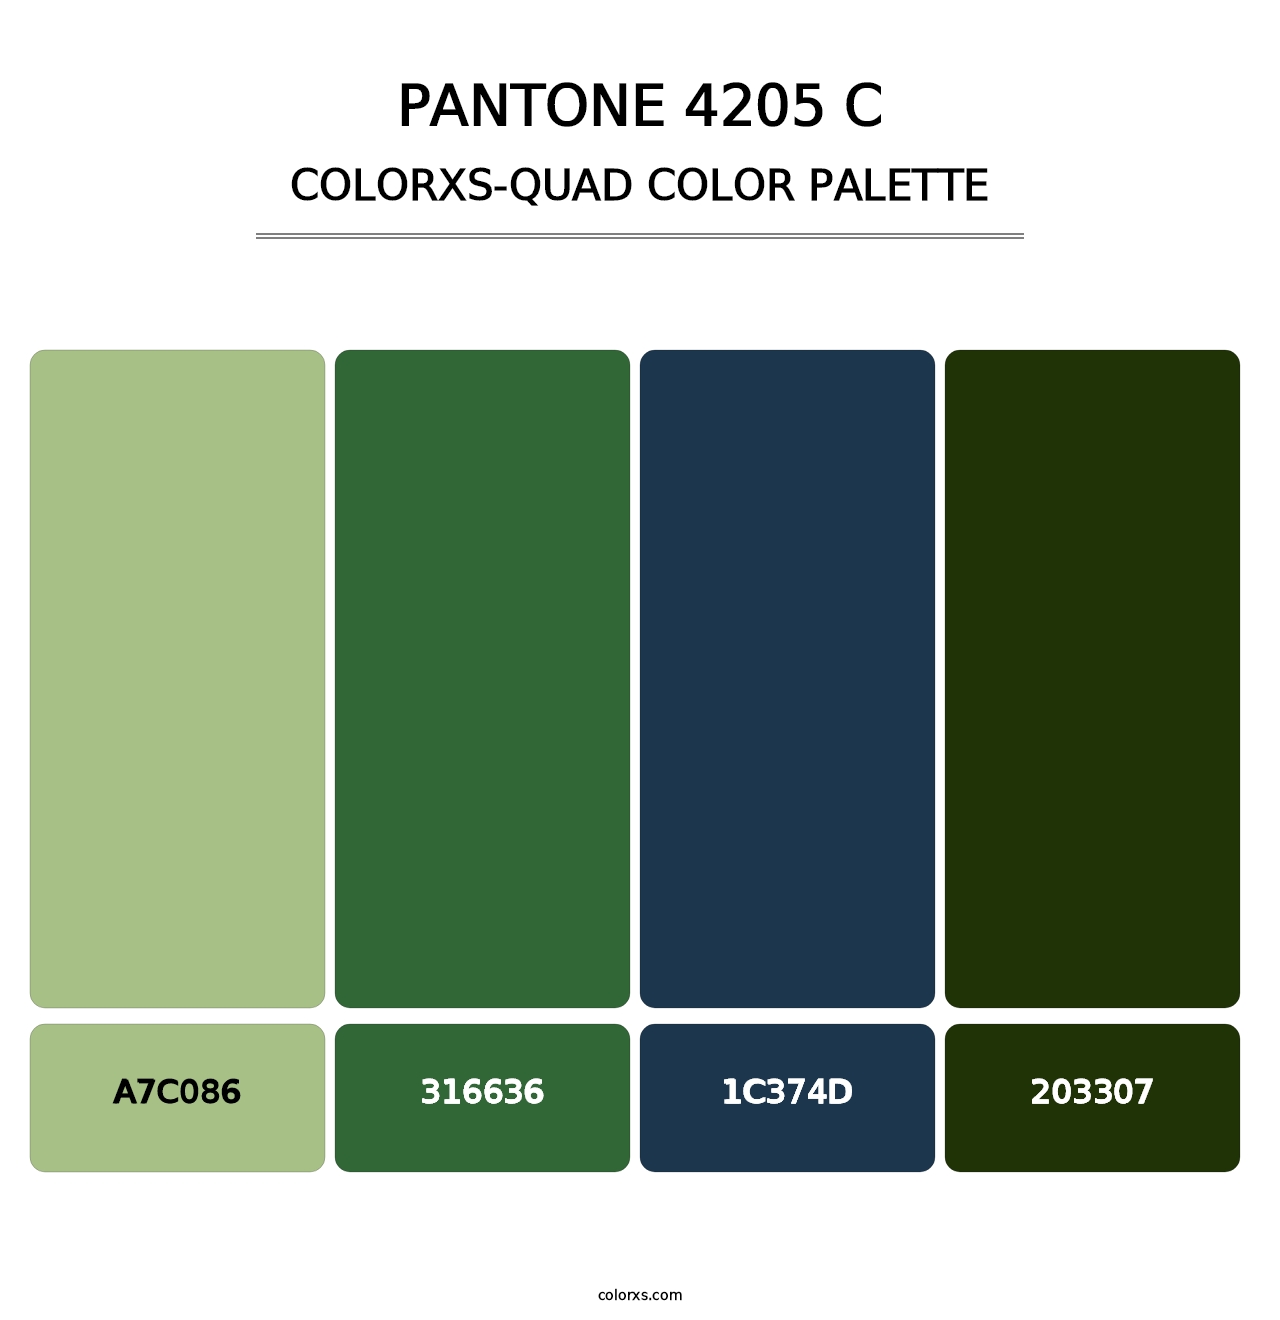 PANTONE 4205 C - Colorxs Quad Palette